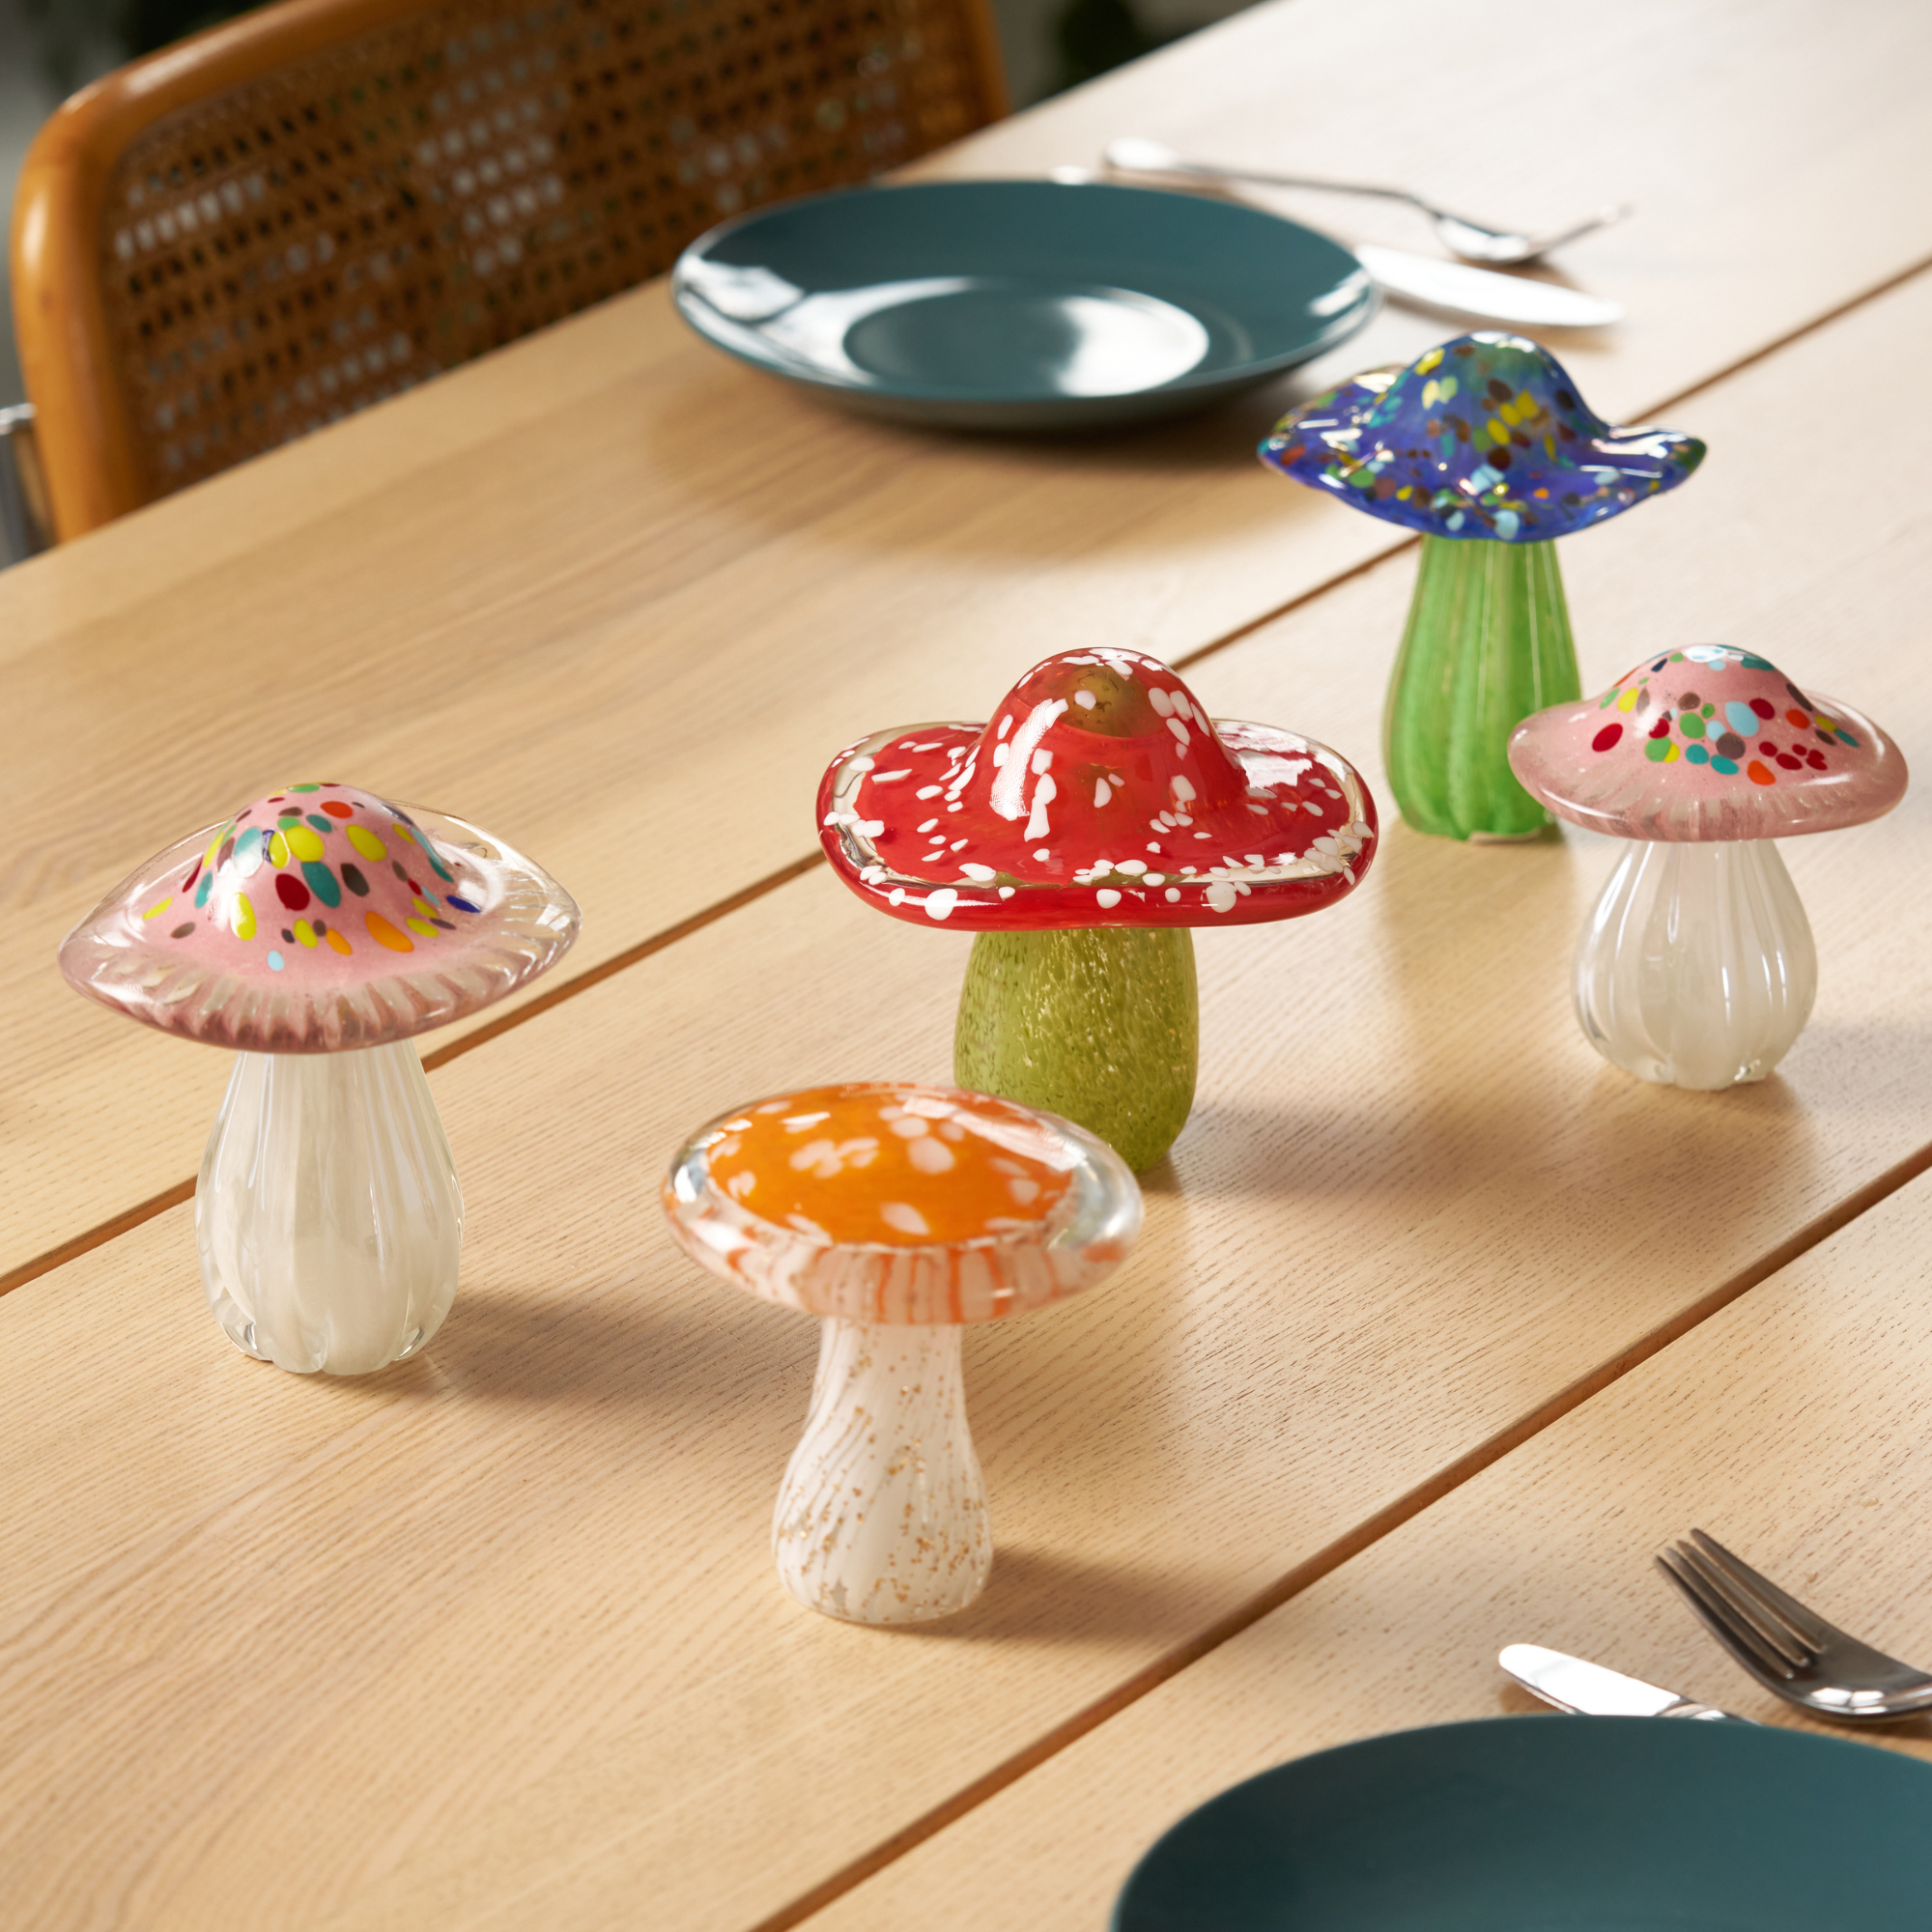 Glass Mushroom Figurine